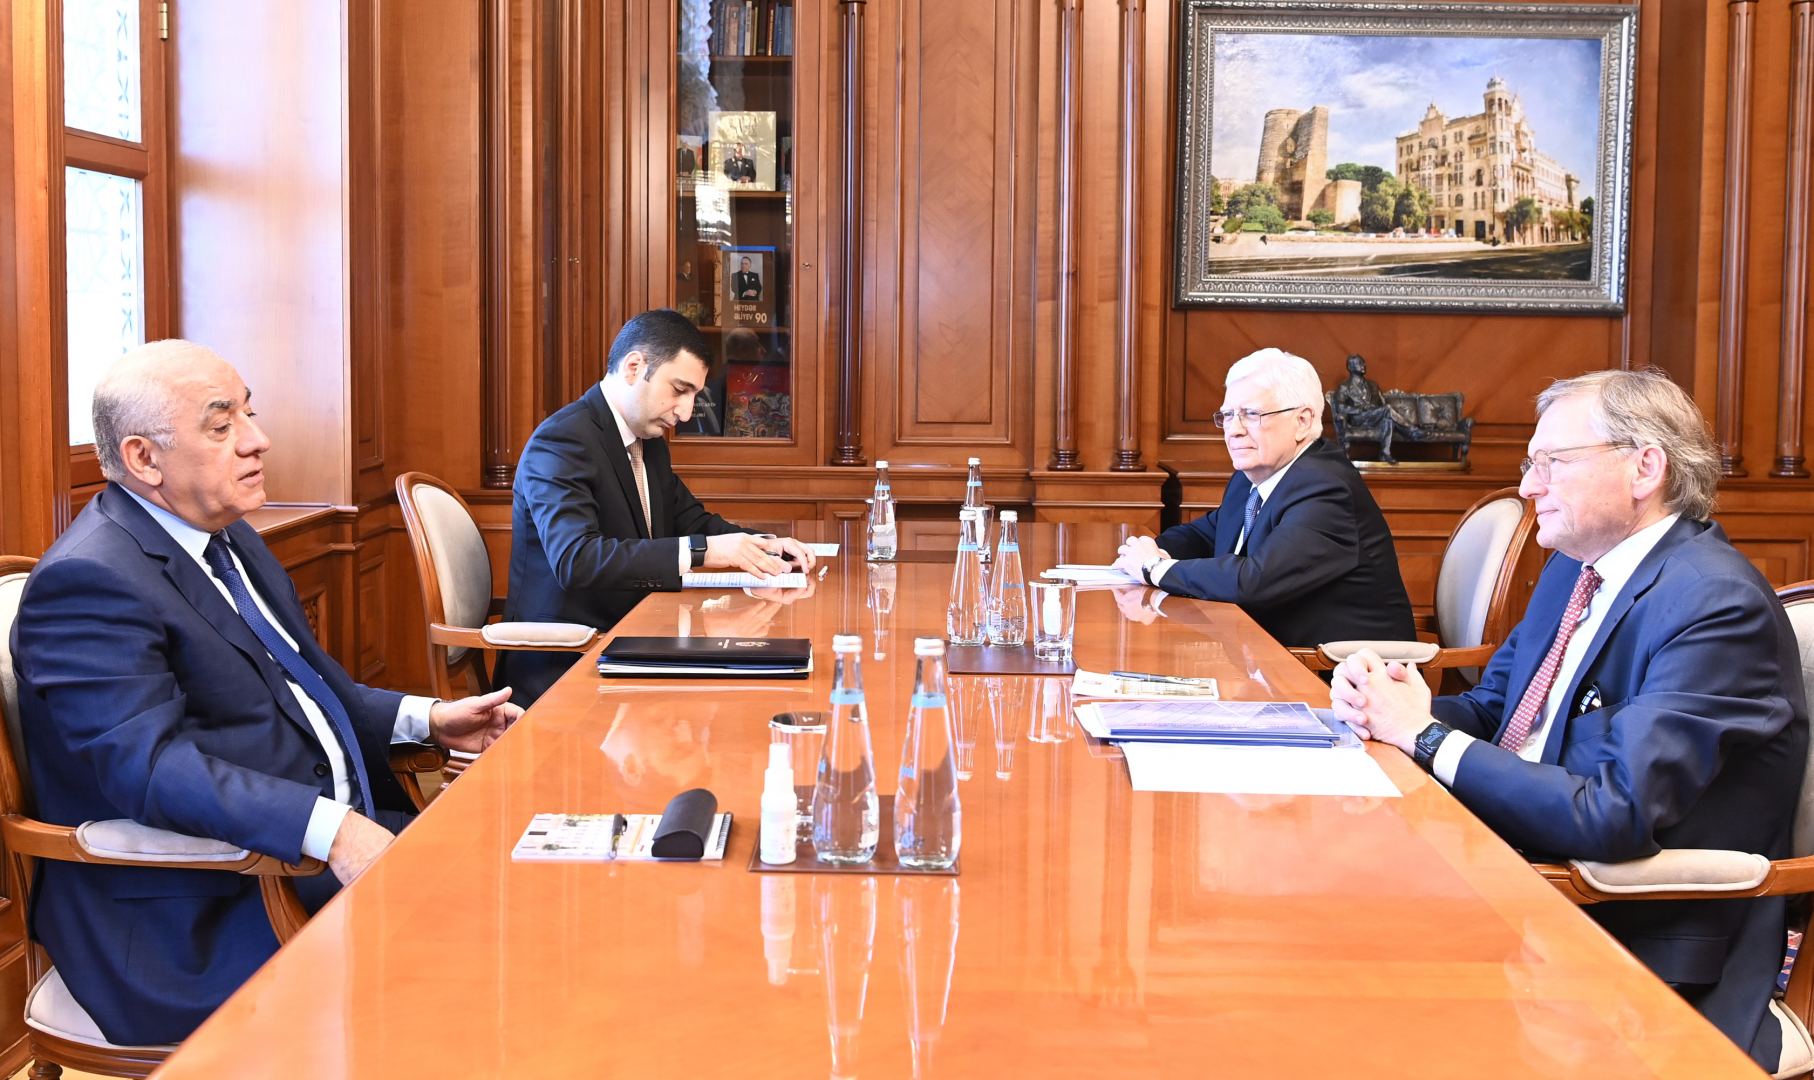 Обсуждены перспективы дальнейшего развития сотрудничества между Азербайджаном и Россией в торгово-экономической сфере